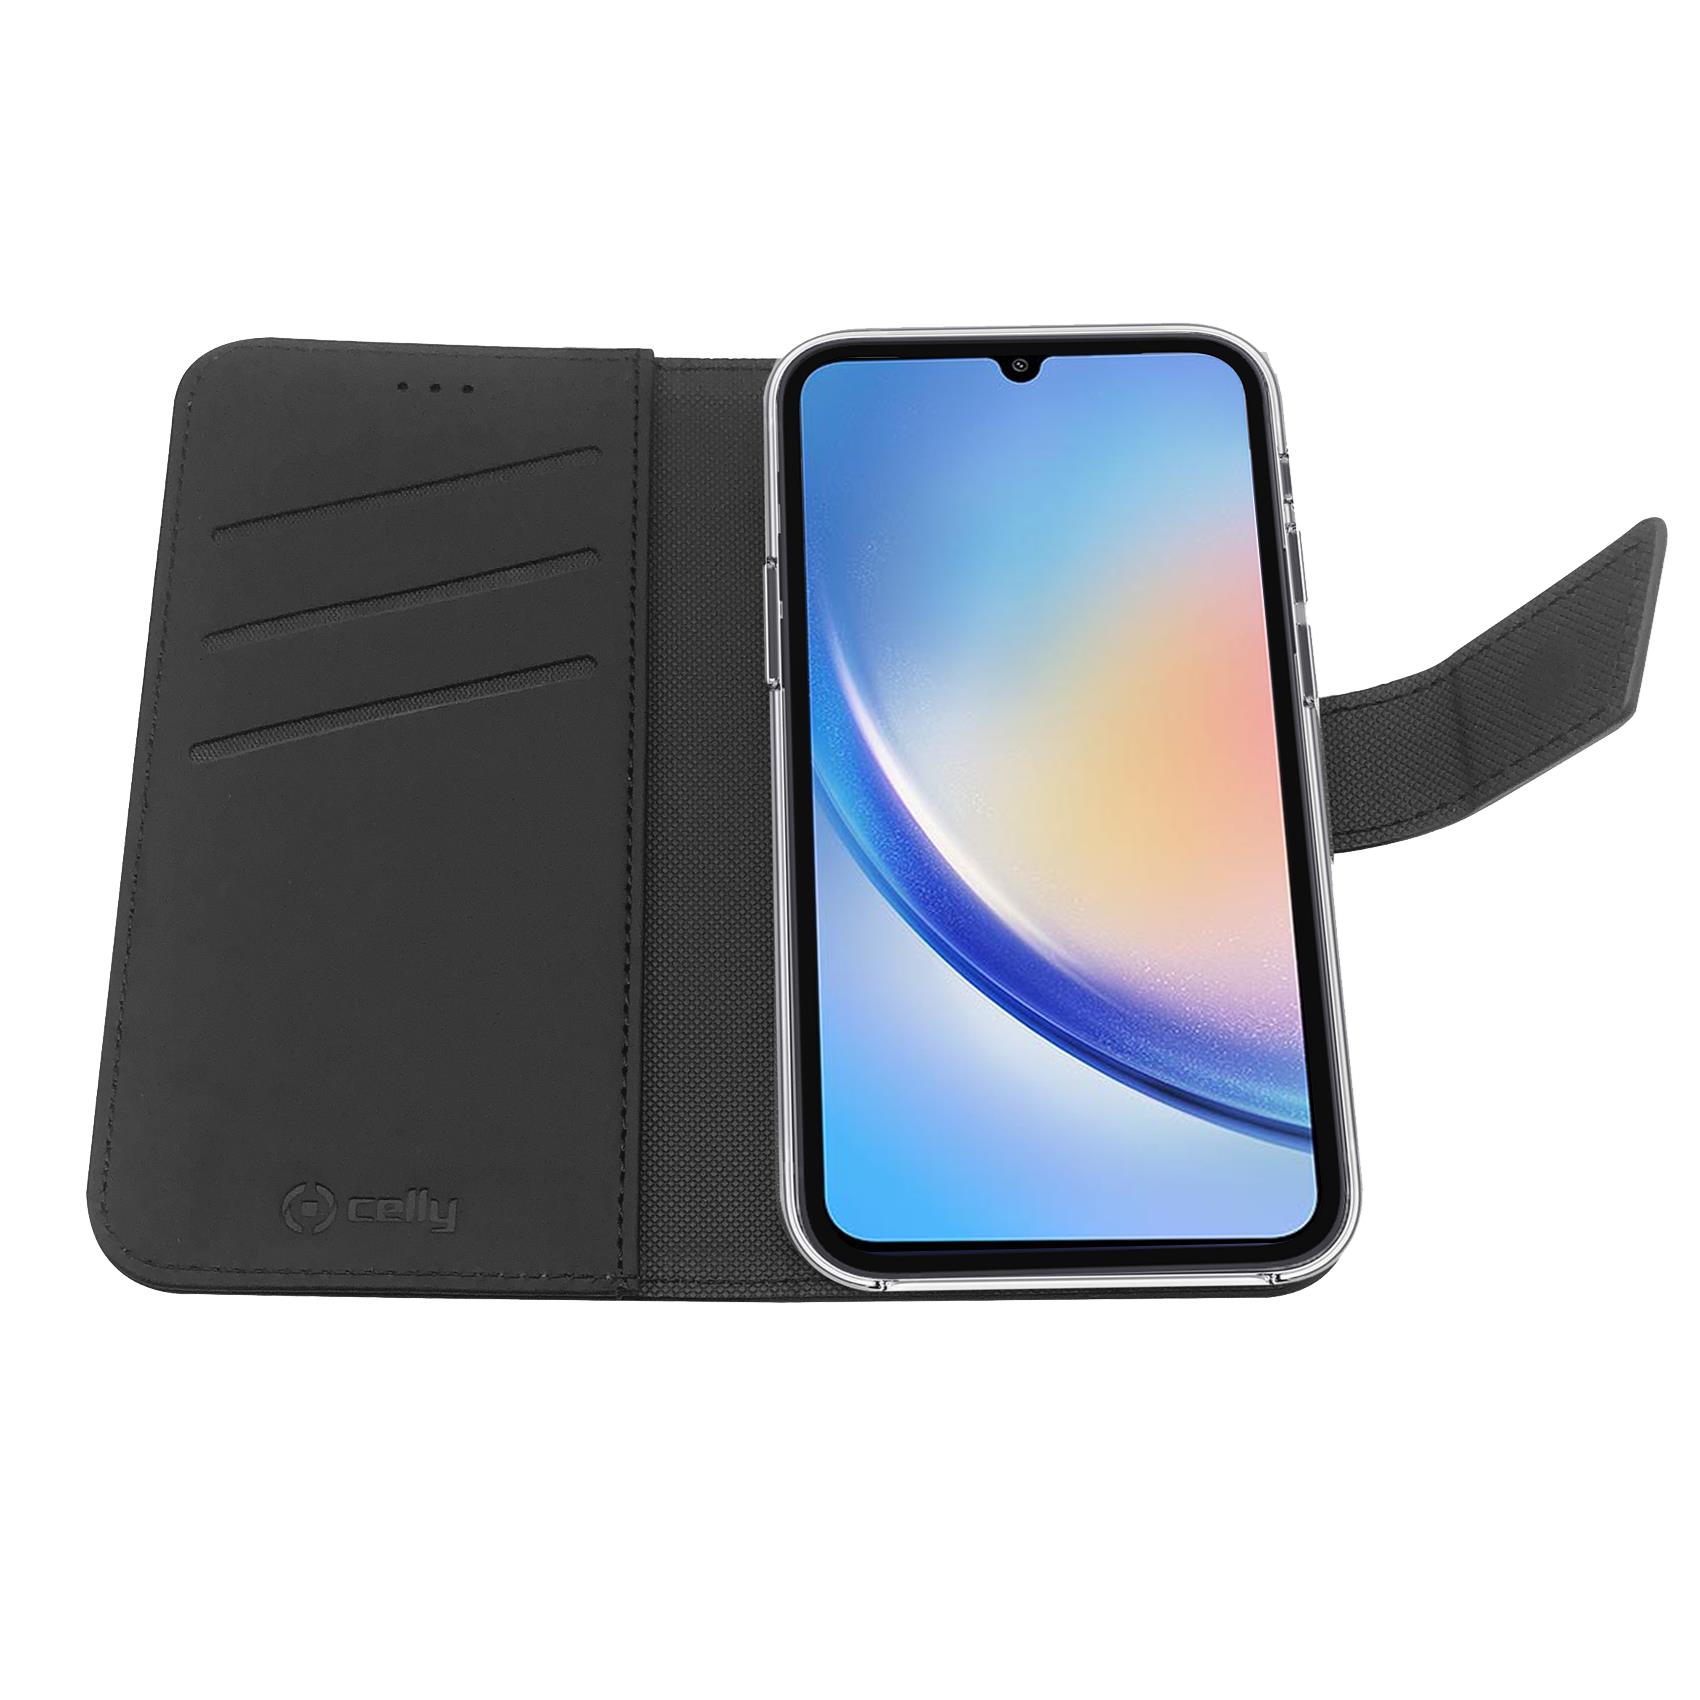 Custodia Celly Samsung A34 5G wallet case black WALLY1036